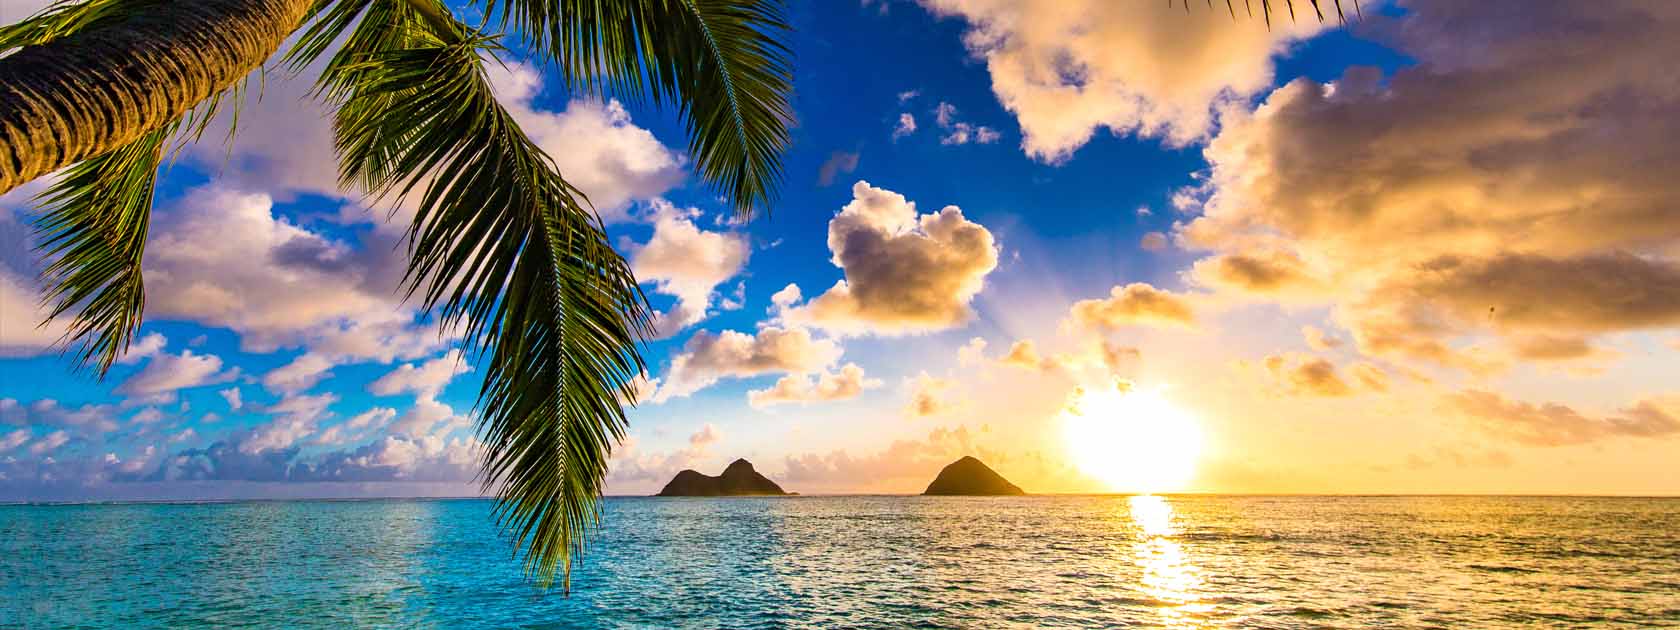 Sonnenuntergang am Meer mit Palmen und 2 kleinen Inseln in der Ferne